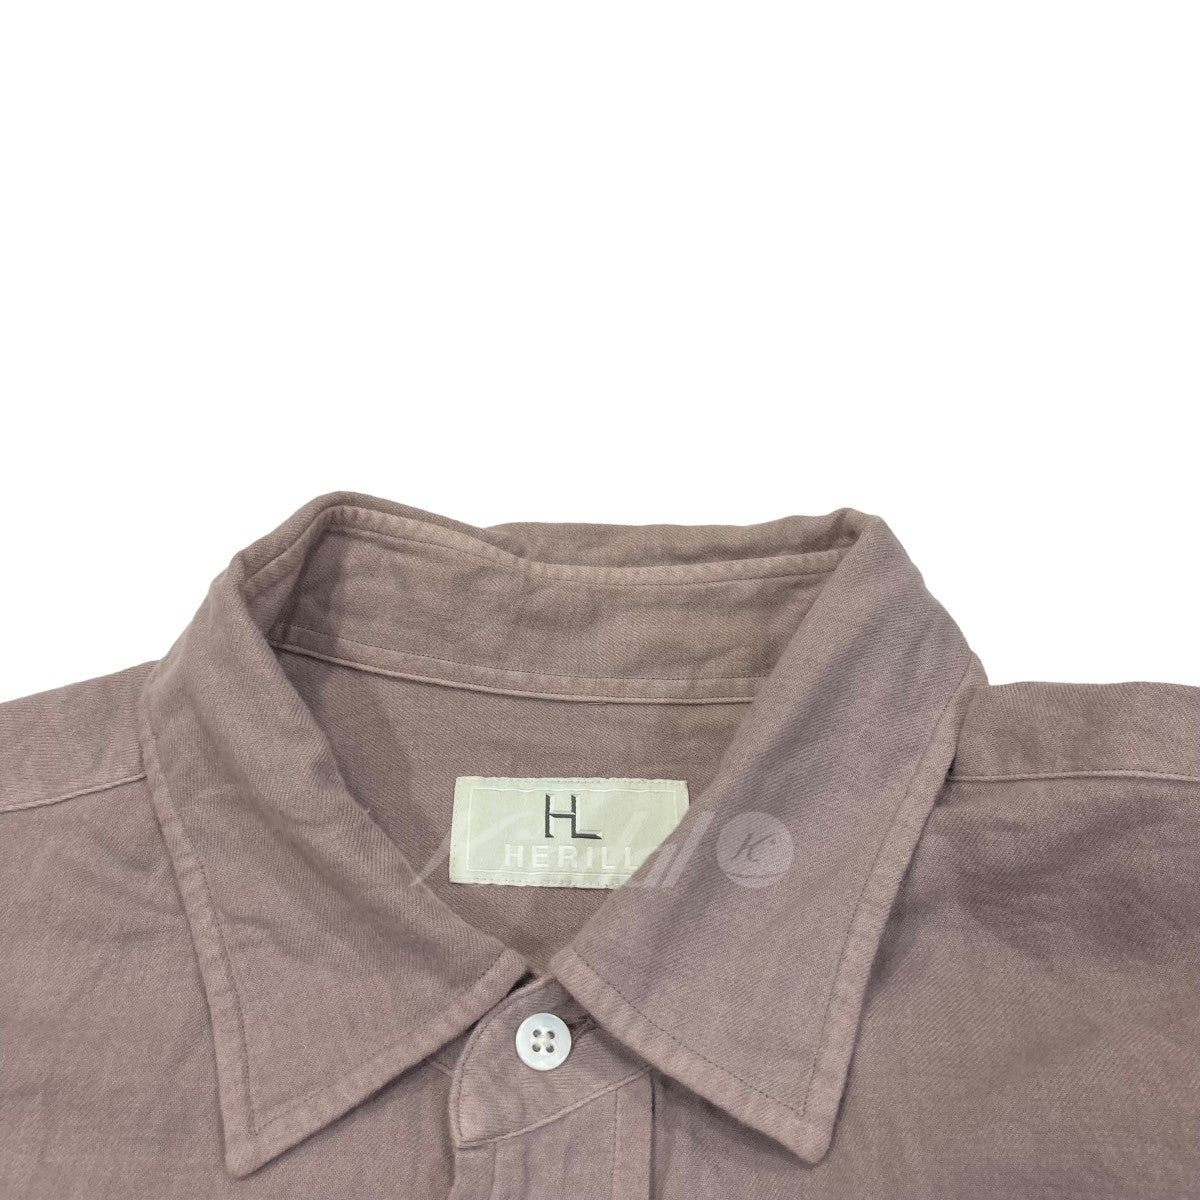 HERILL(ヘリル) CottonCashmere Shirts コットンカシミヤシャツ 22-050 